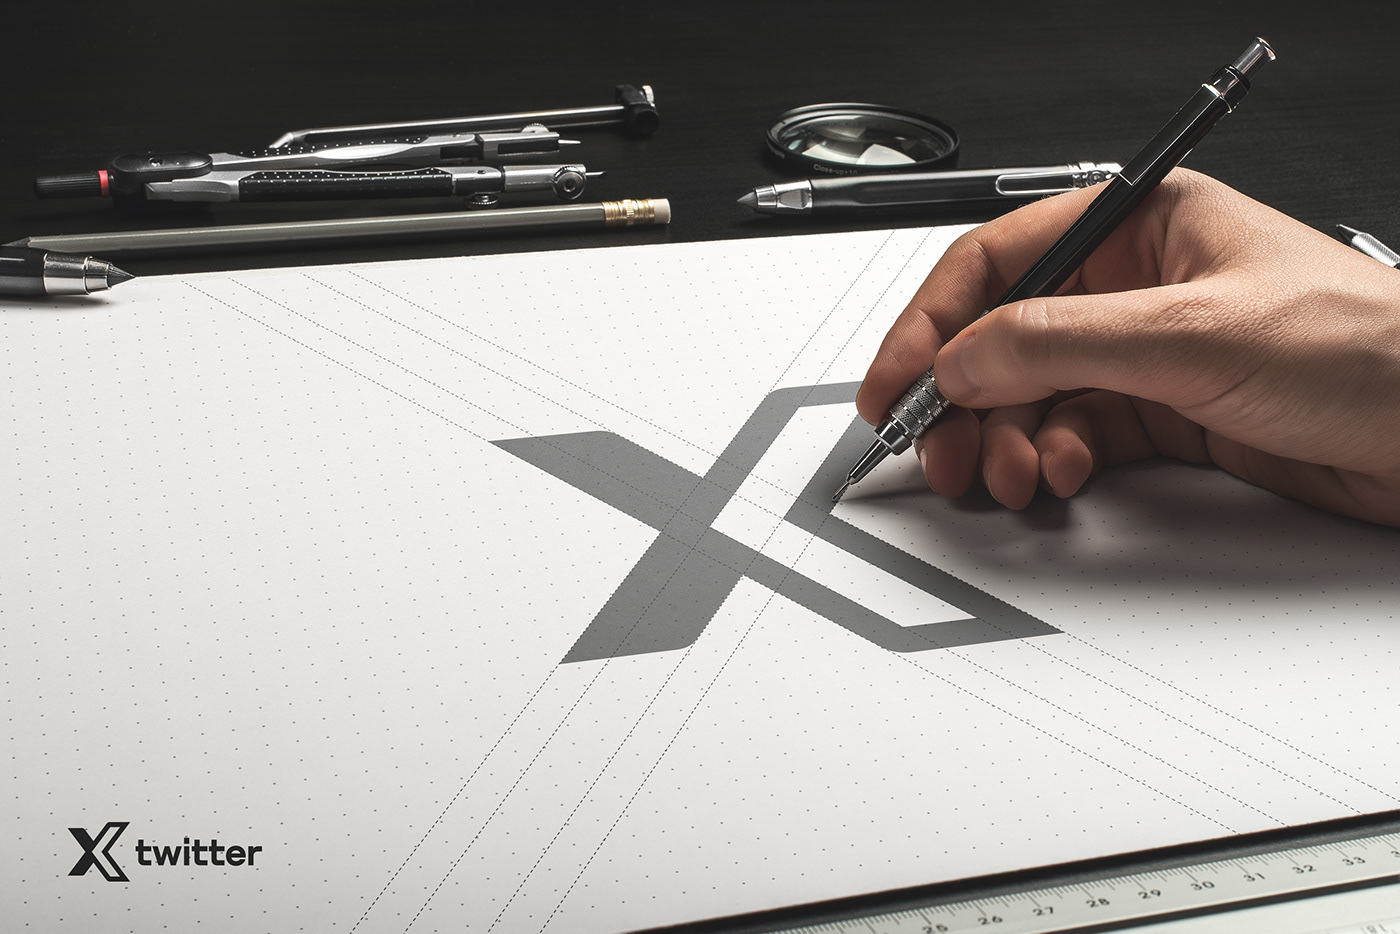 logo Logo Design redesign twitter Elon Musk rebranding X logo brand identity branding  social media